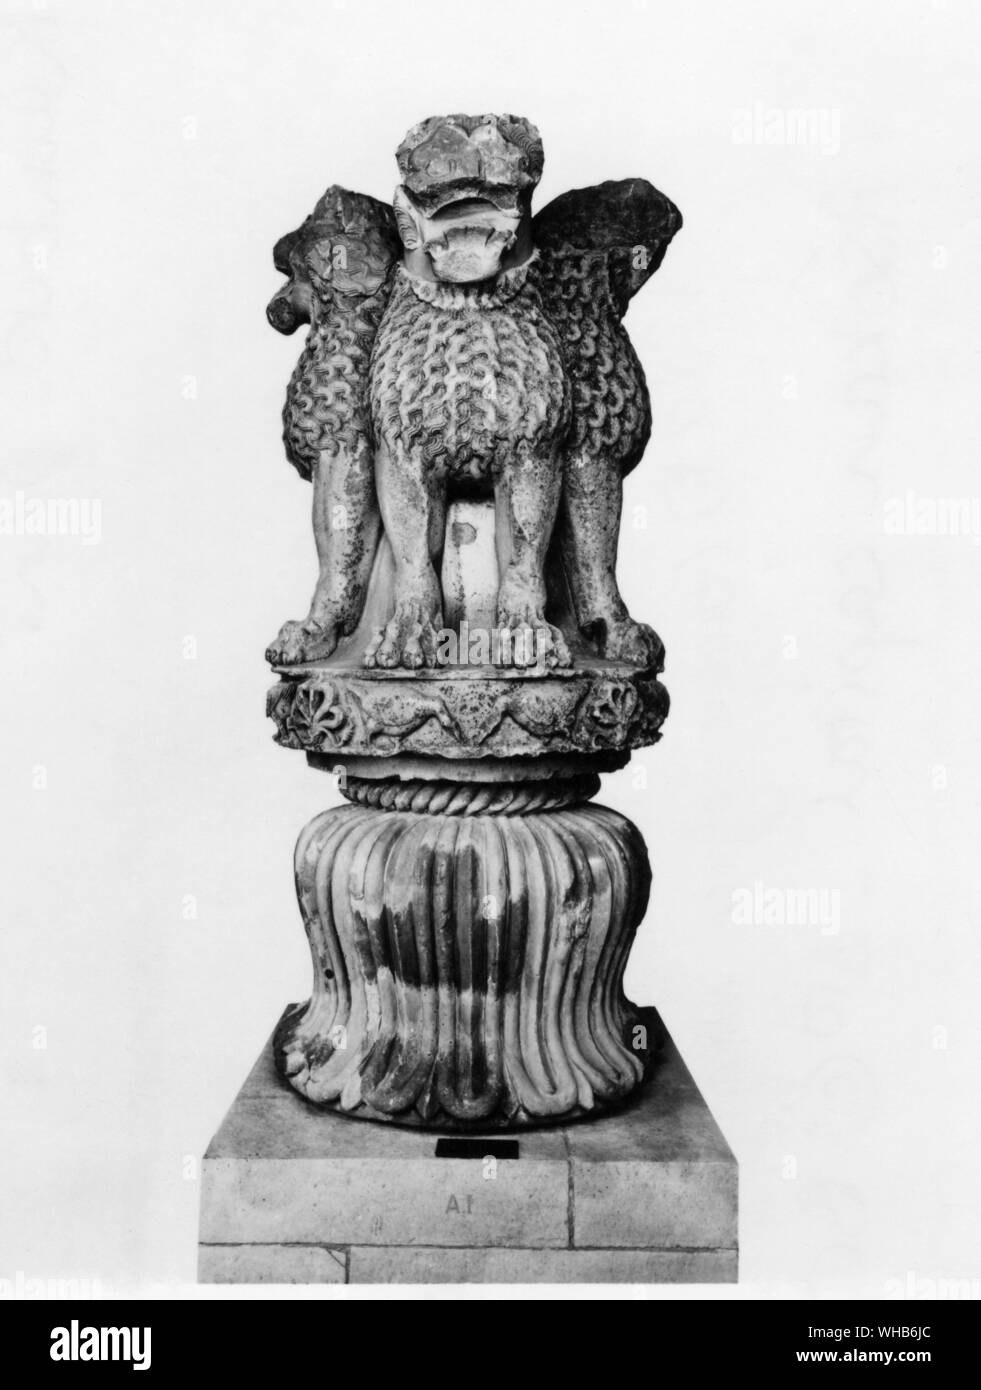 Monumento Azhokan - Asokan capitale - III secolo A.C. I Lions di Sarnath, un monumento da Ashoka periodo. Questo quattro lion motif adorna la guarnizione nazionale dell'India. Foto Stock